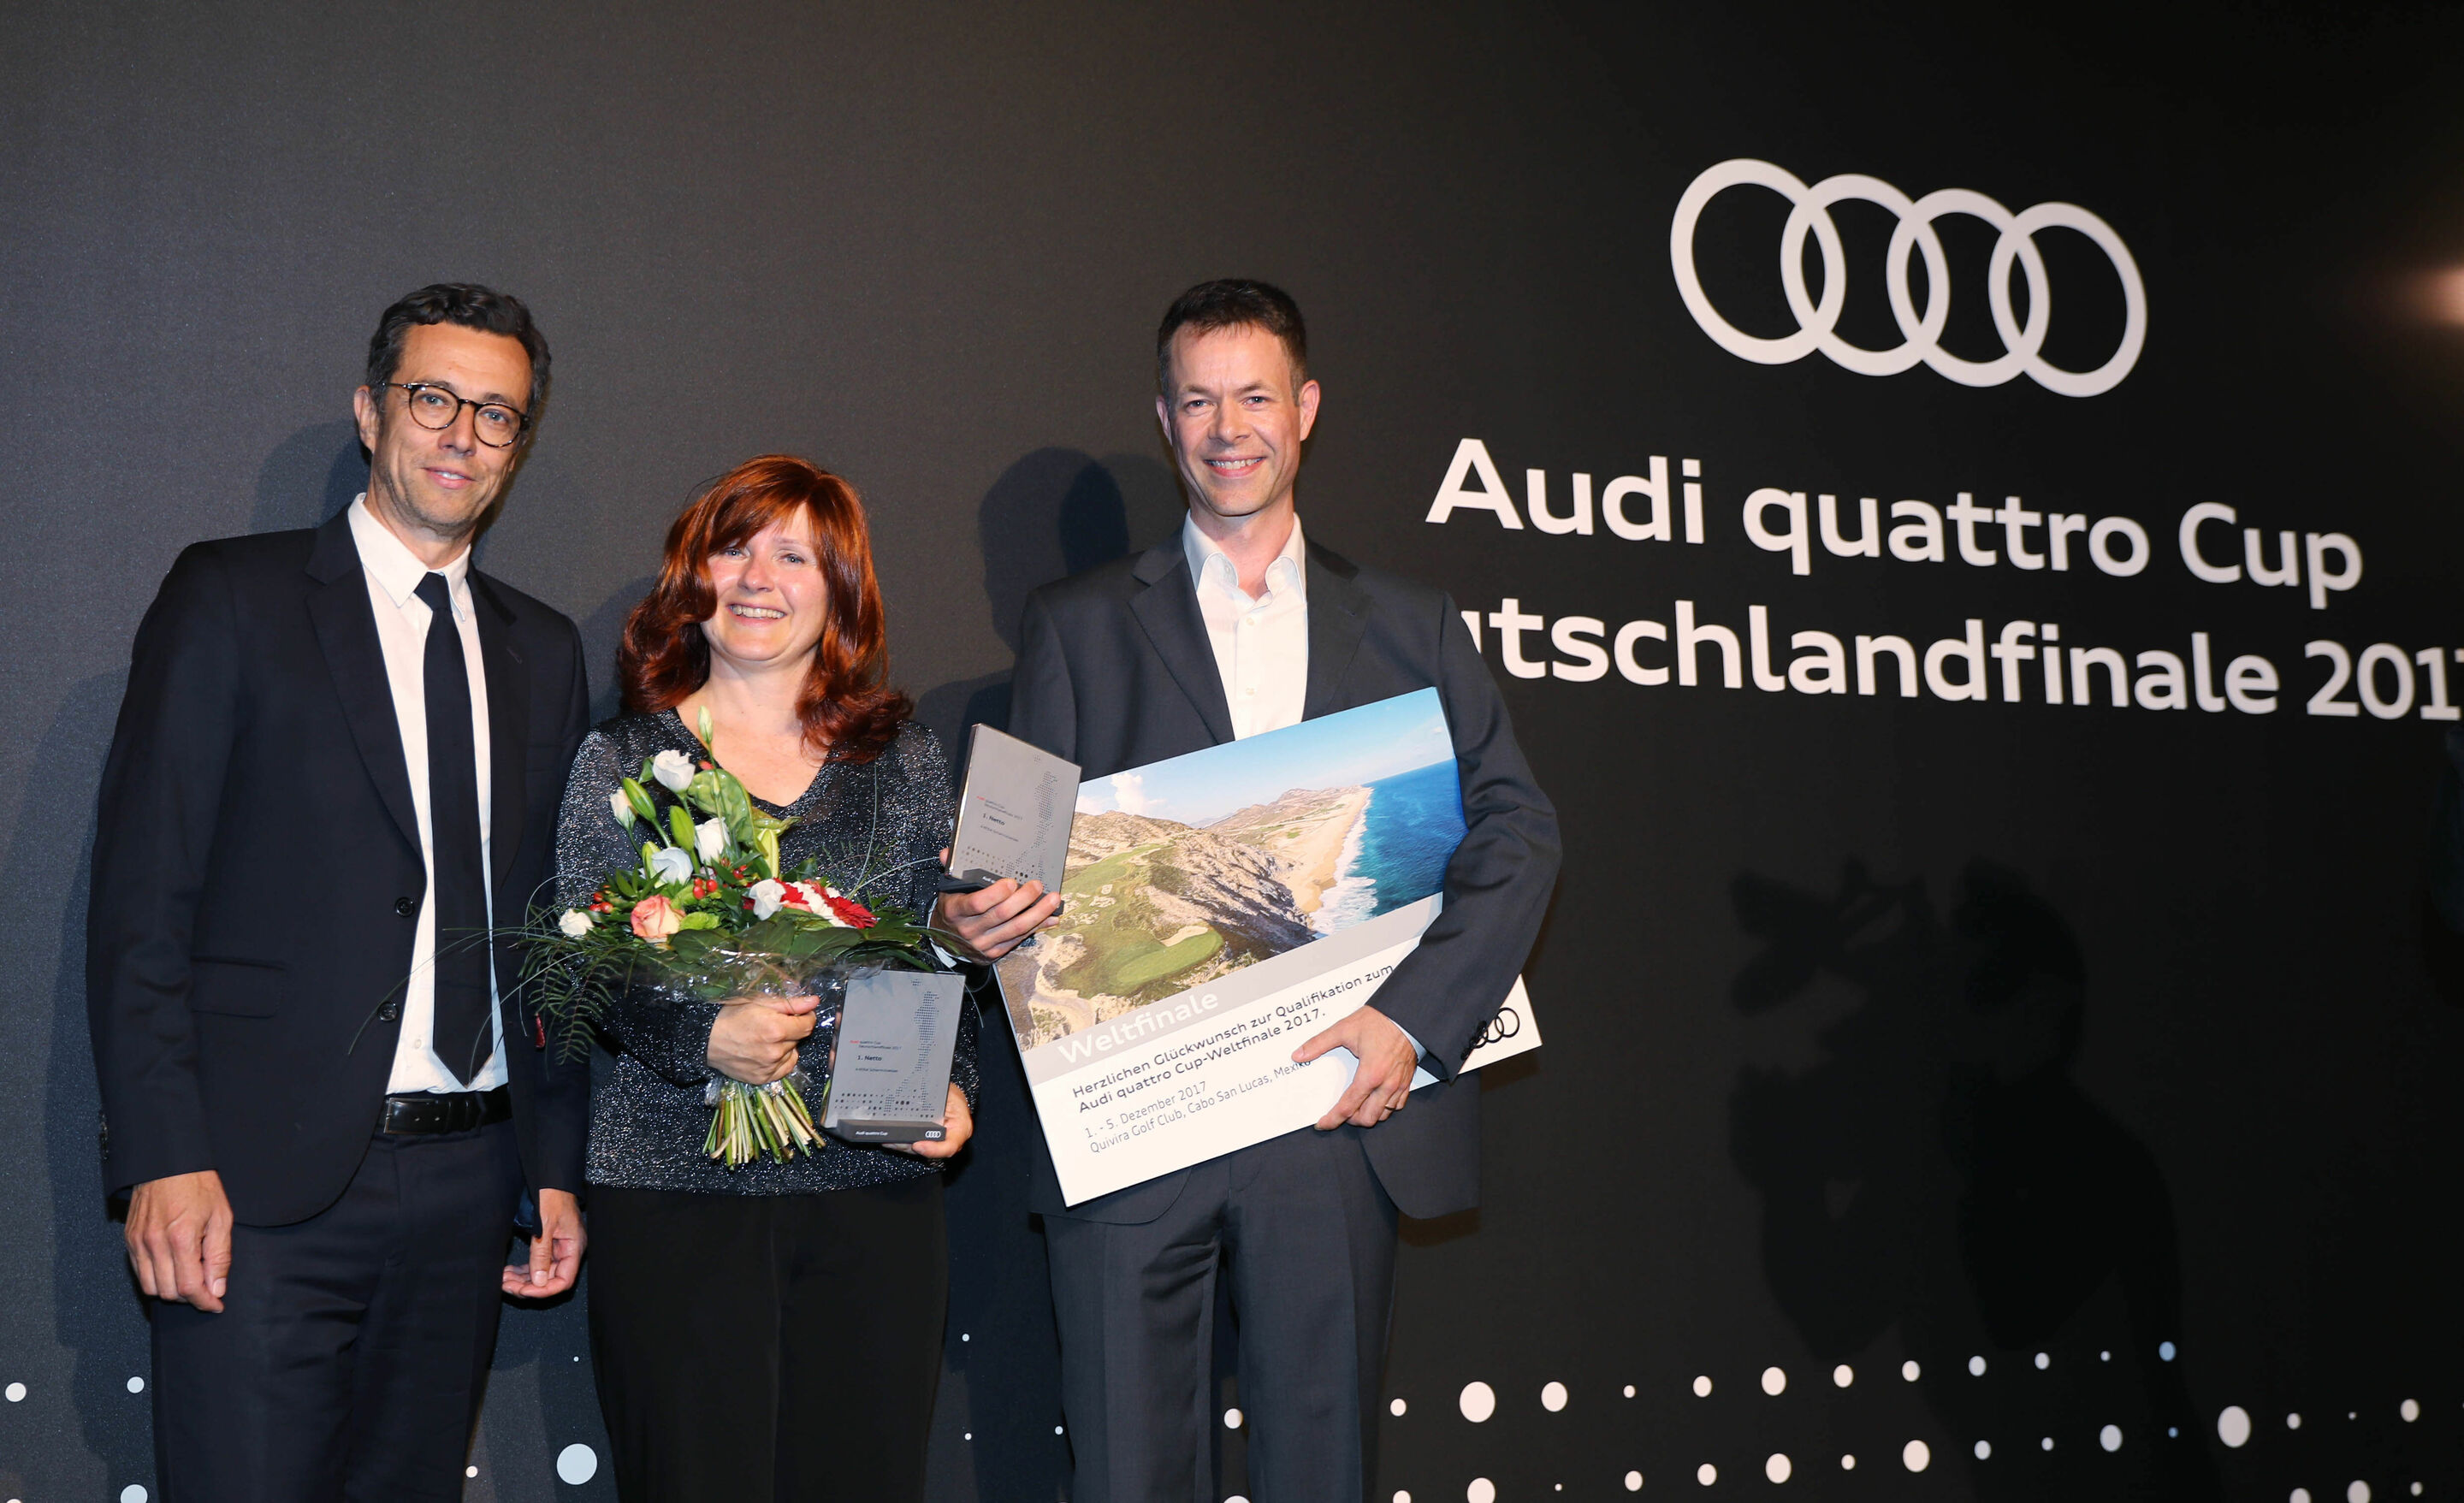 Audi quattro Cup Deutschlandfinale 2017